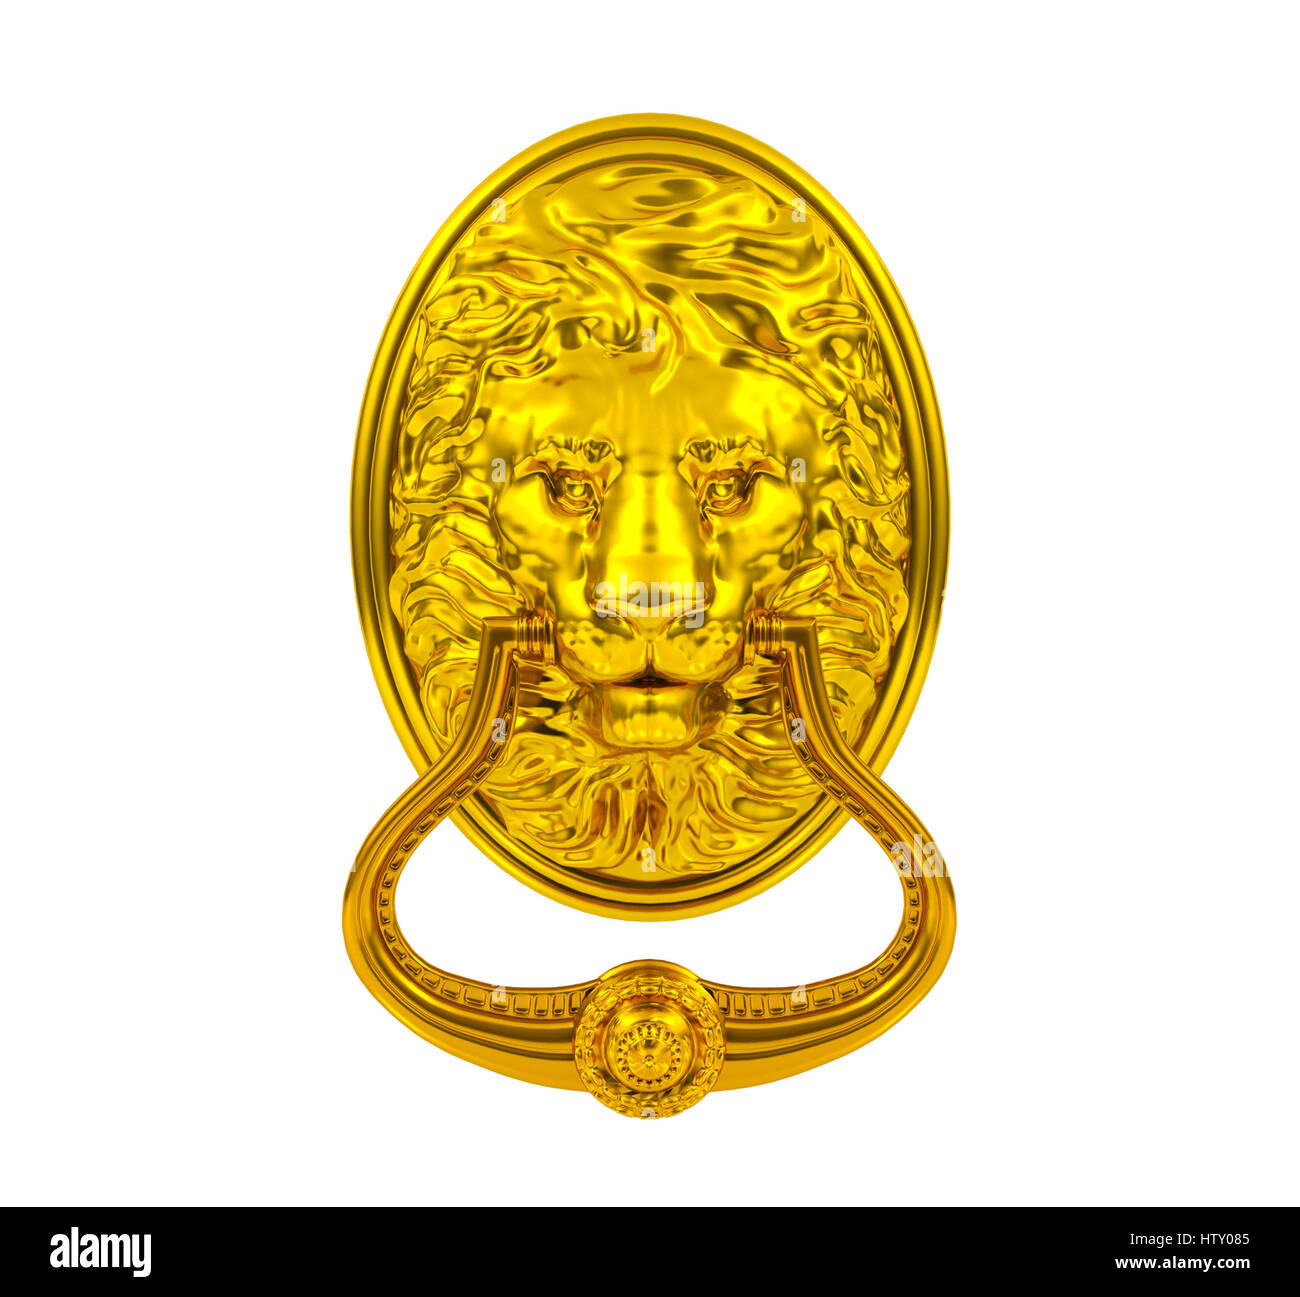 3D golden lion heurtoir isolé sur fond blanc Banque D'Images